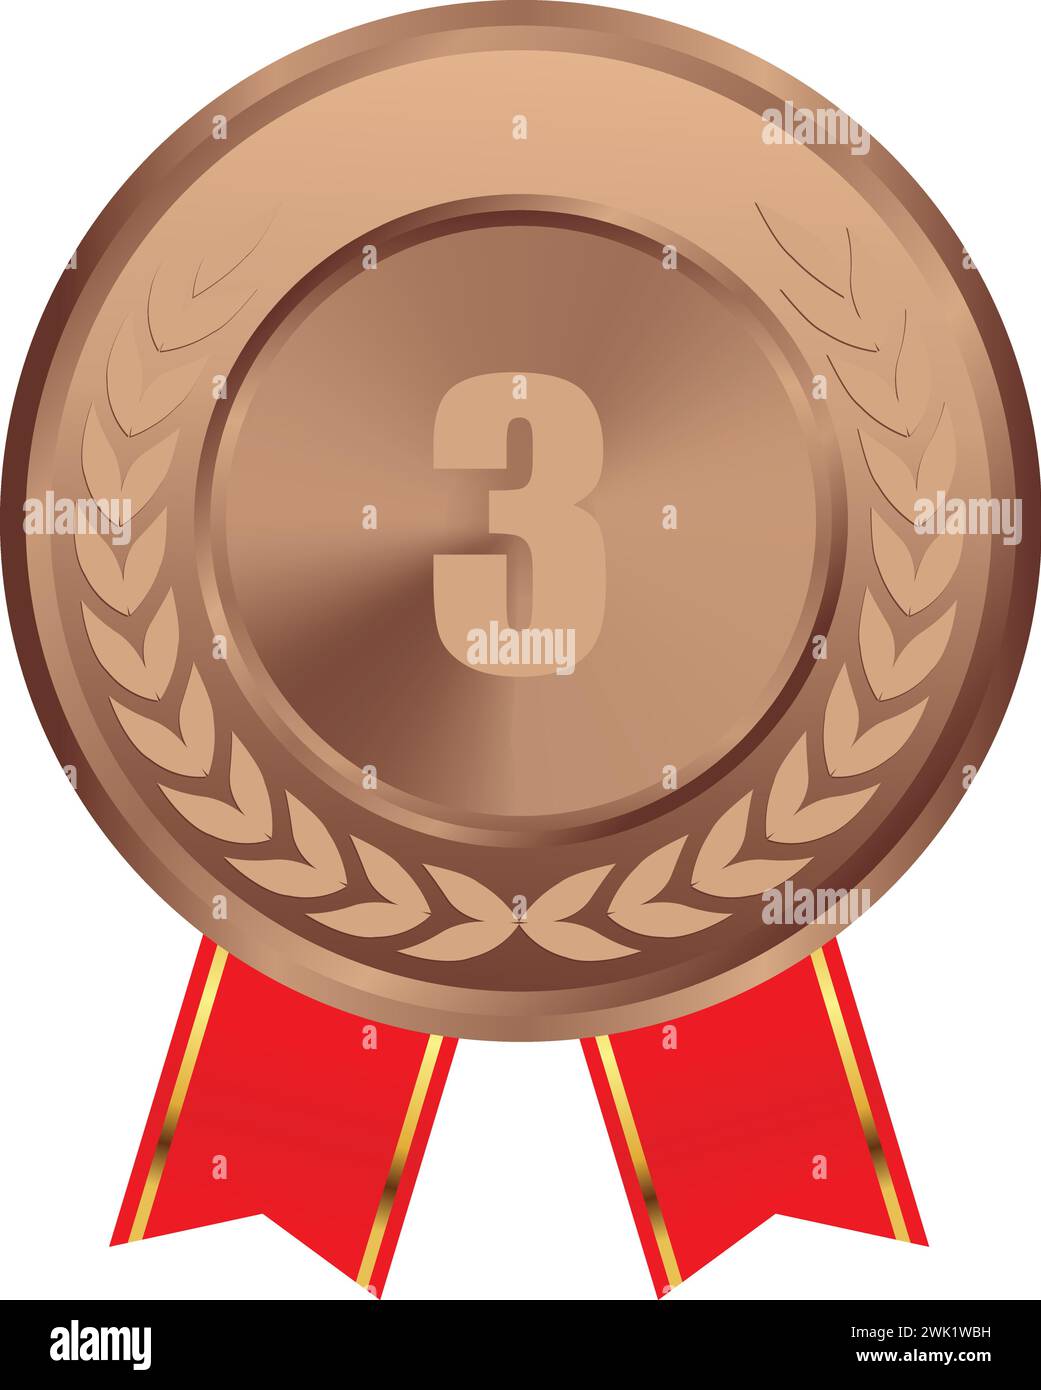 Realistischer Bronzemedaillenvektor mit rotem Band, 3. Bronzemedaille, 3. Preis, Bronze Challenge Award, rotes Band, Medaillengewinner, 1. Platz Trophäe, Stock Vektor